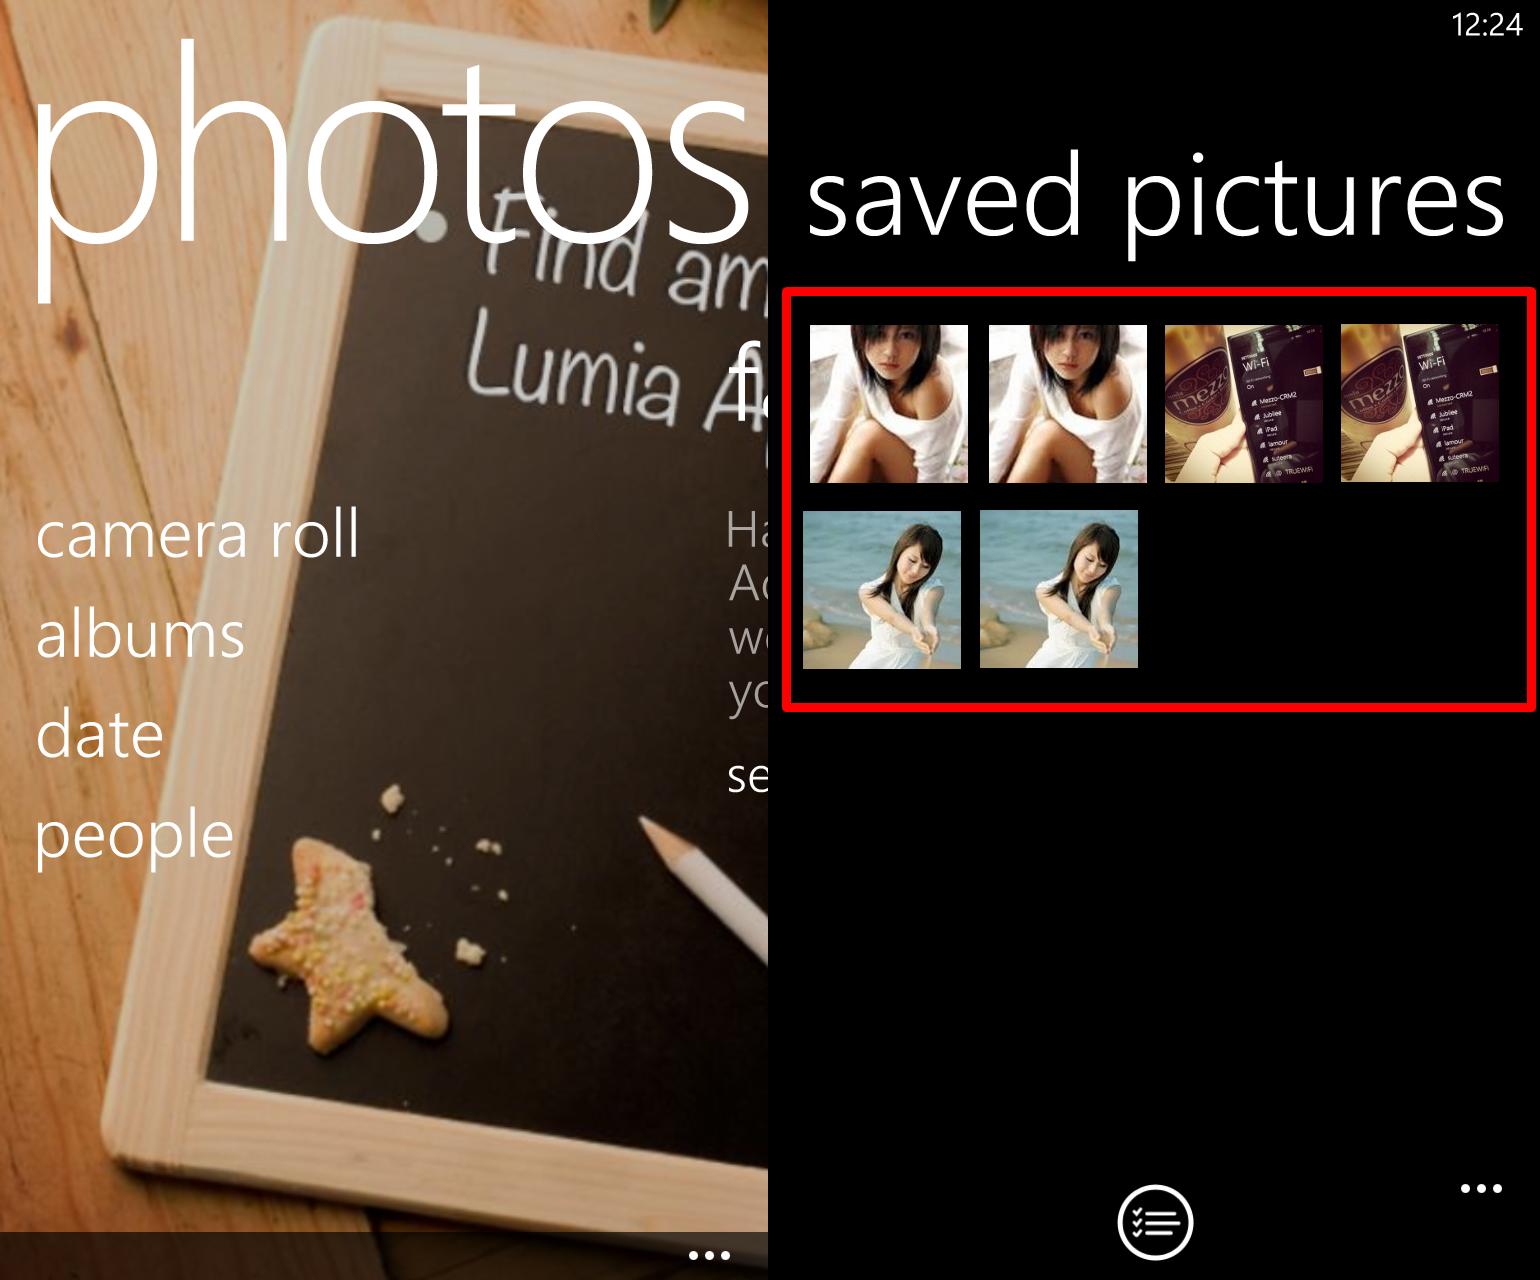 wp ss 20130604 00011 | NOKIA | <!--:TH-->ค้นพบสาเหตุที่ทำให้แอพบันทึกรูปซ้ำ 2 รูป และหน่วยความจำภายในของเครื่อง Windows Phone 8 หายไปแล้ว!! พร้อมทางแก้สำหรับนักพัฒนาและผู้ใช้งาน<!--:-->